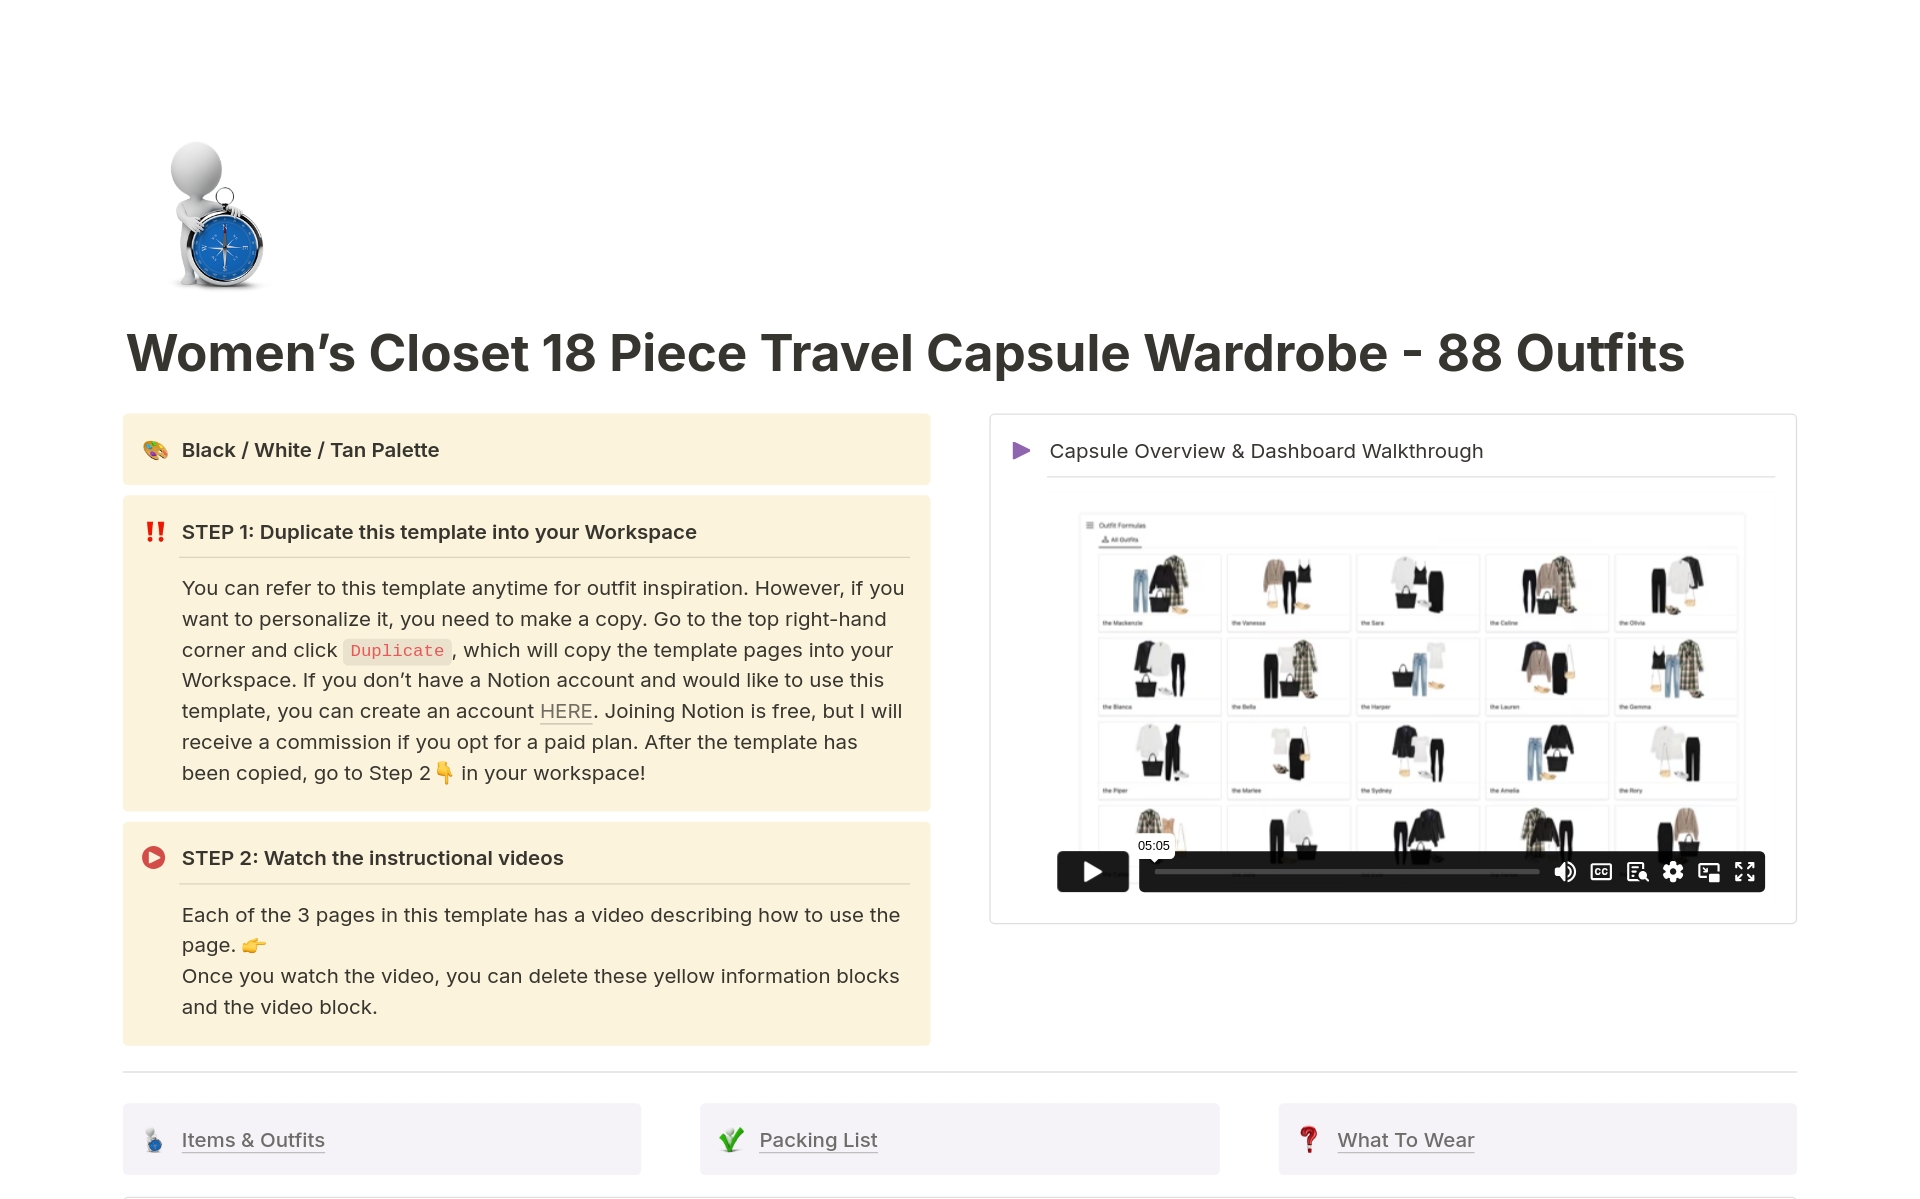 Uma prévia do modelo para 18 Piece Travel Capsule Wardrobe - 88 Outfits